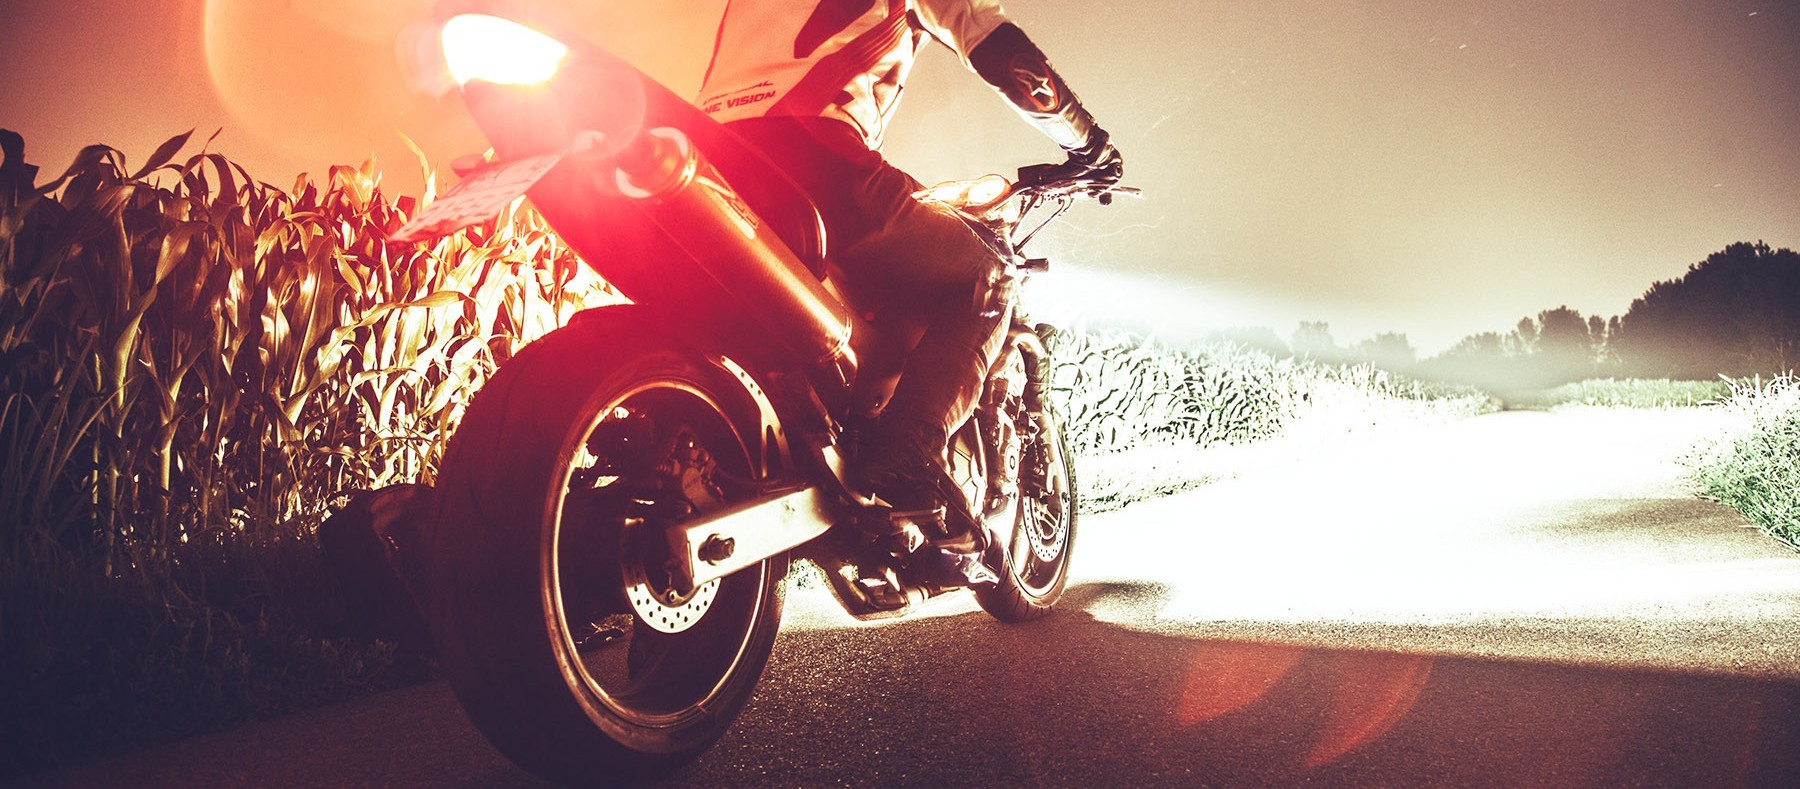 moto sur route la nuit